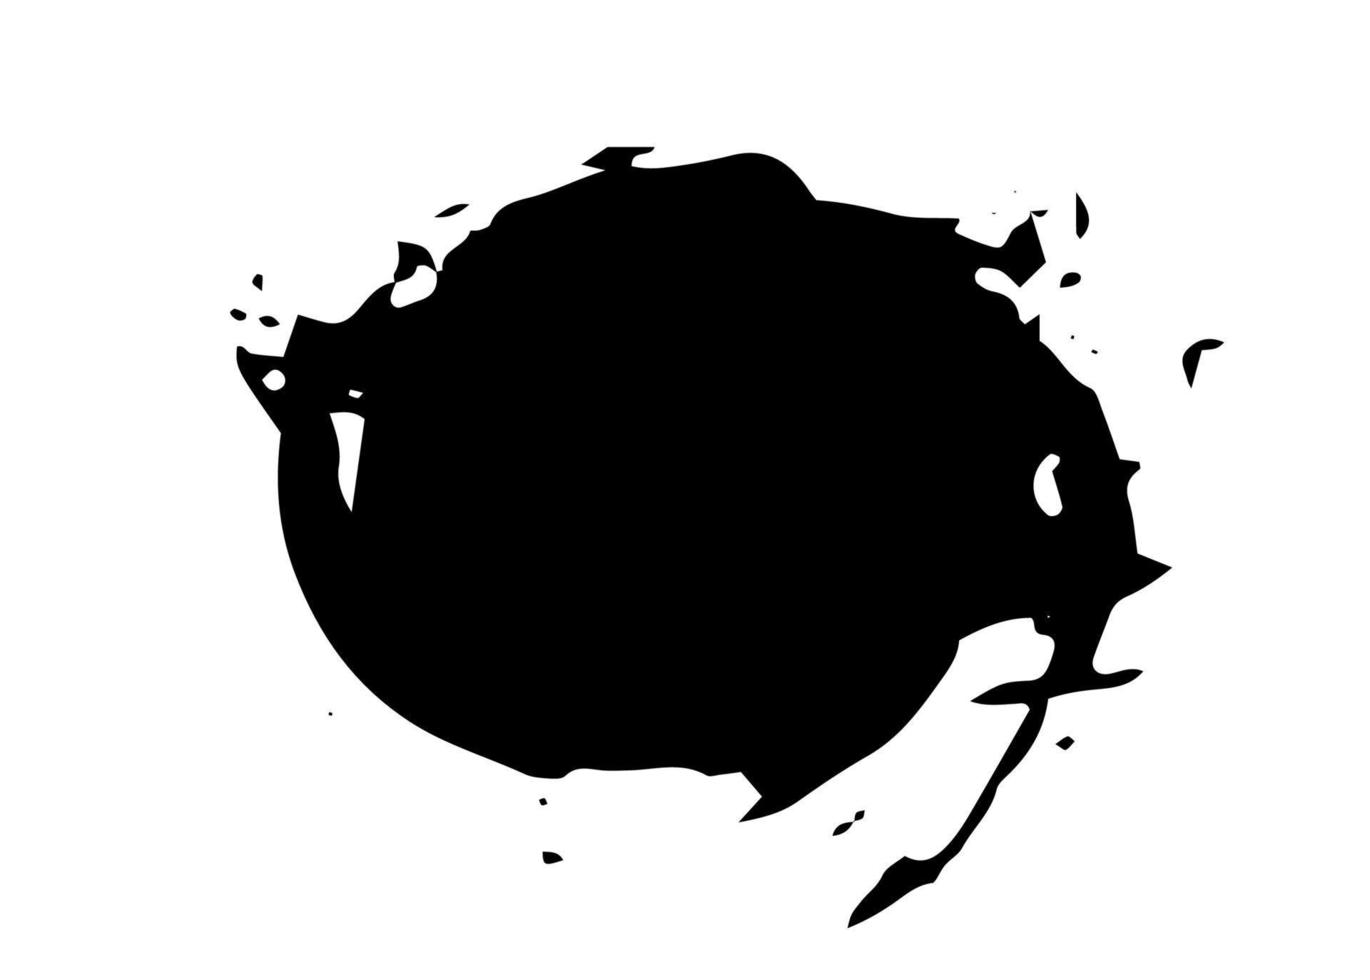 Black blot splatter circle vector illustration isolated on white background